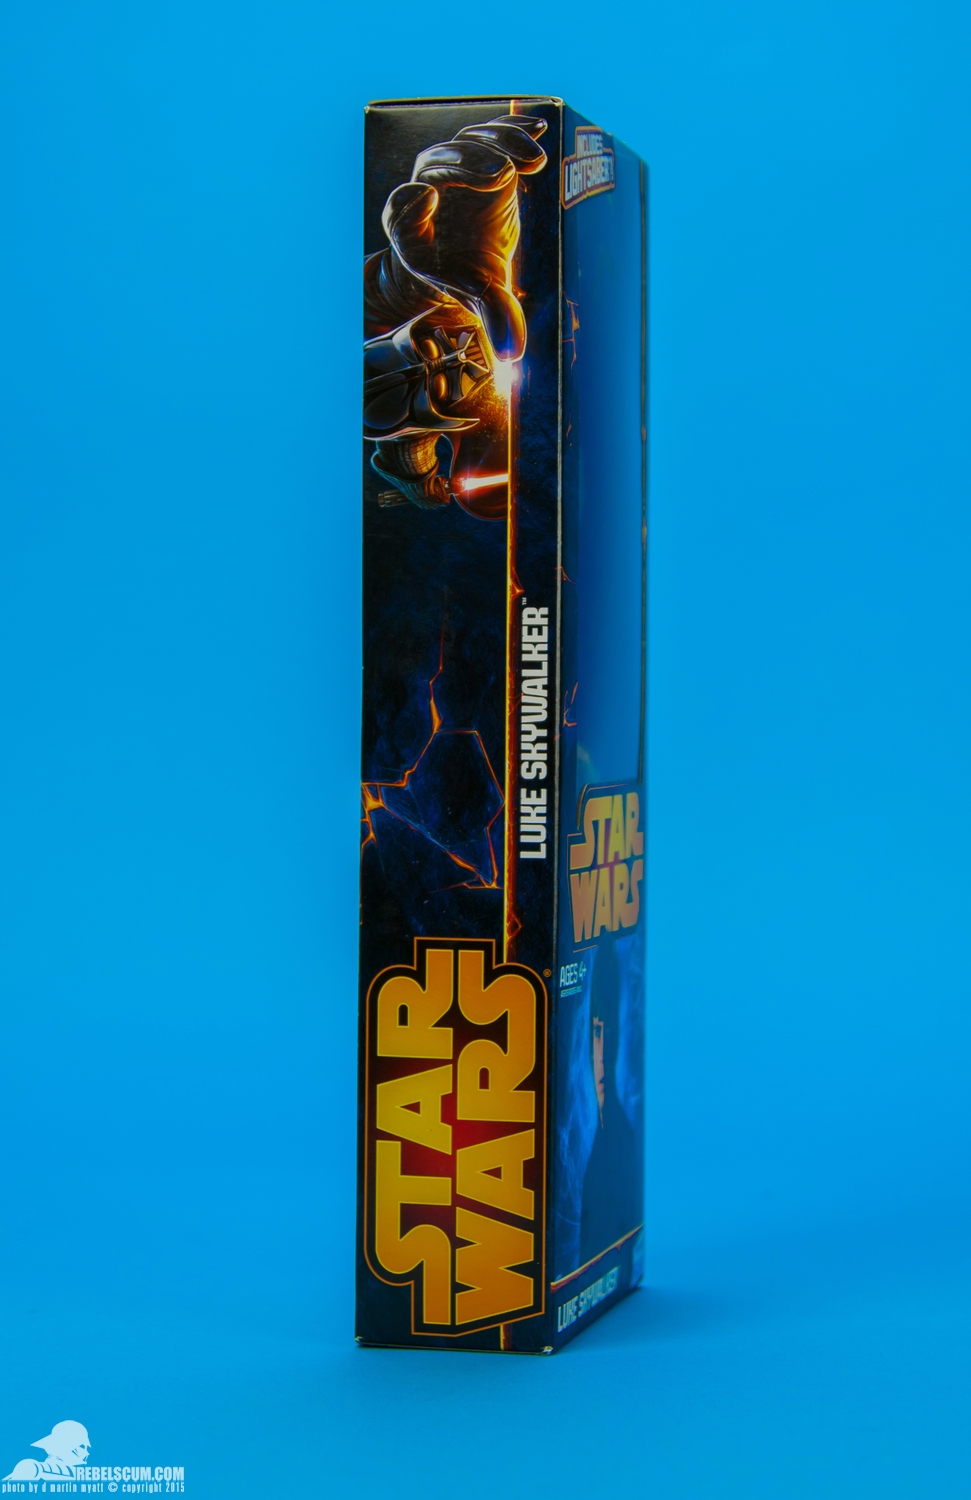 Luke-Skywalker-2014-Star-Wars-12-Inch-Figure-008.jpg